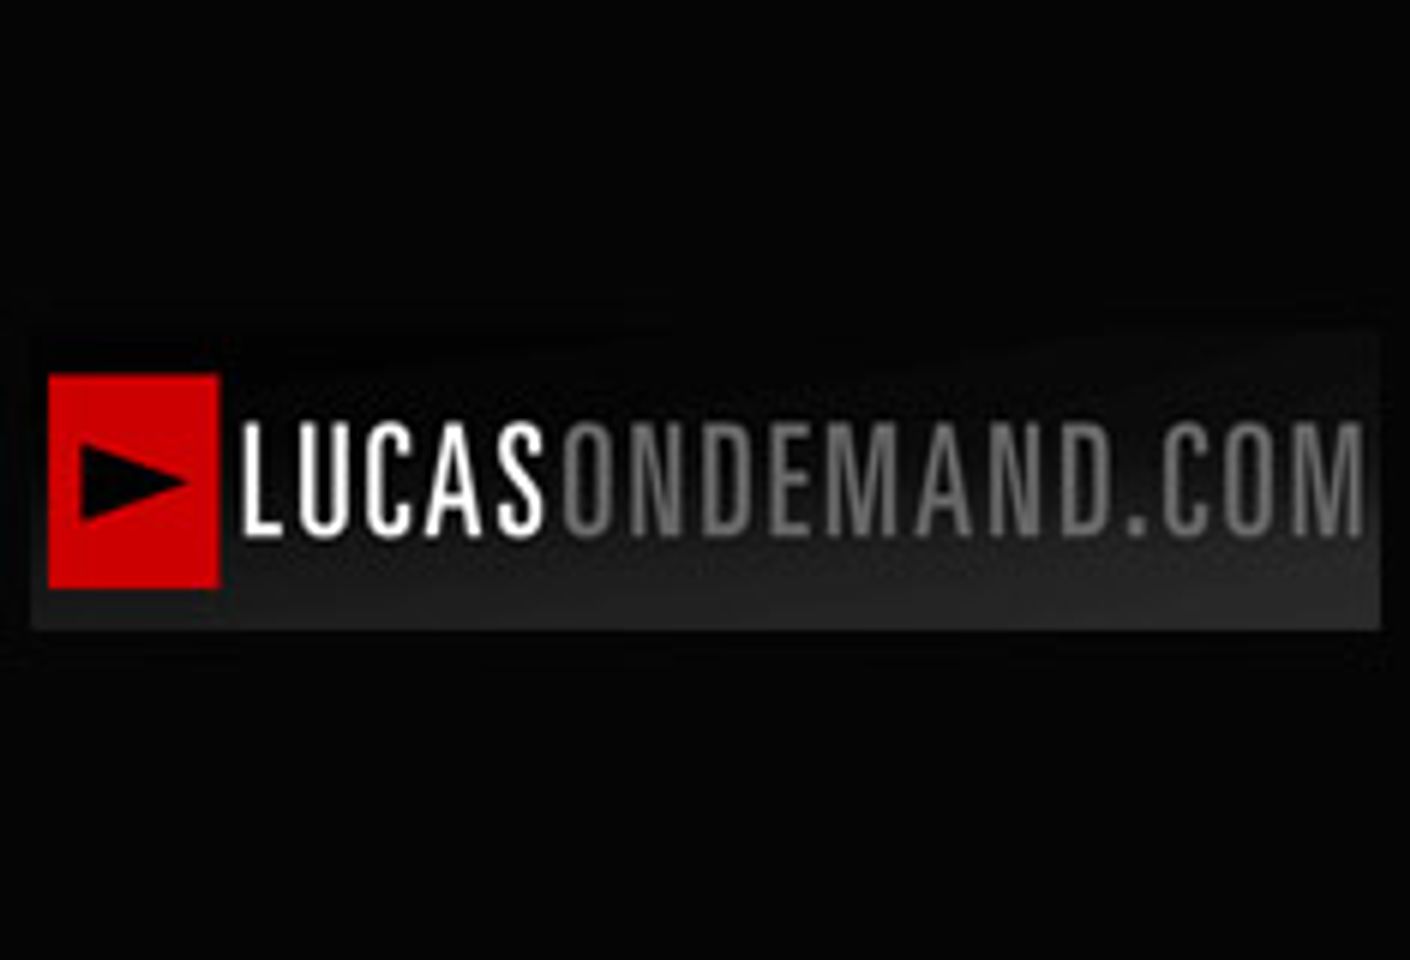 NakedSword.com and Lucas Entertainment Launch LucasOnDemand.com